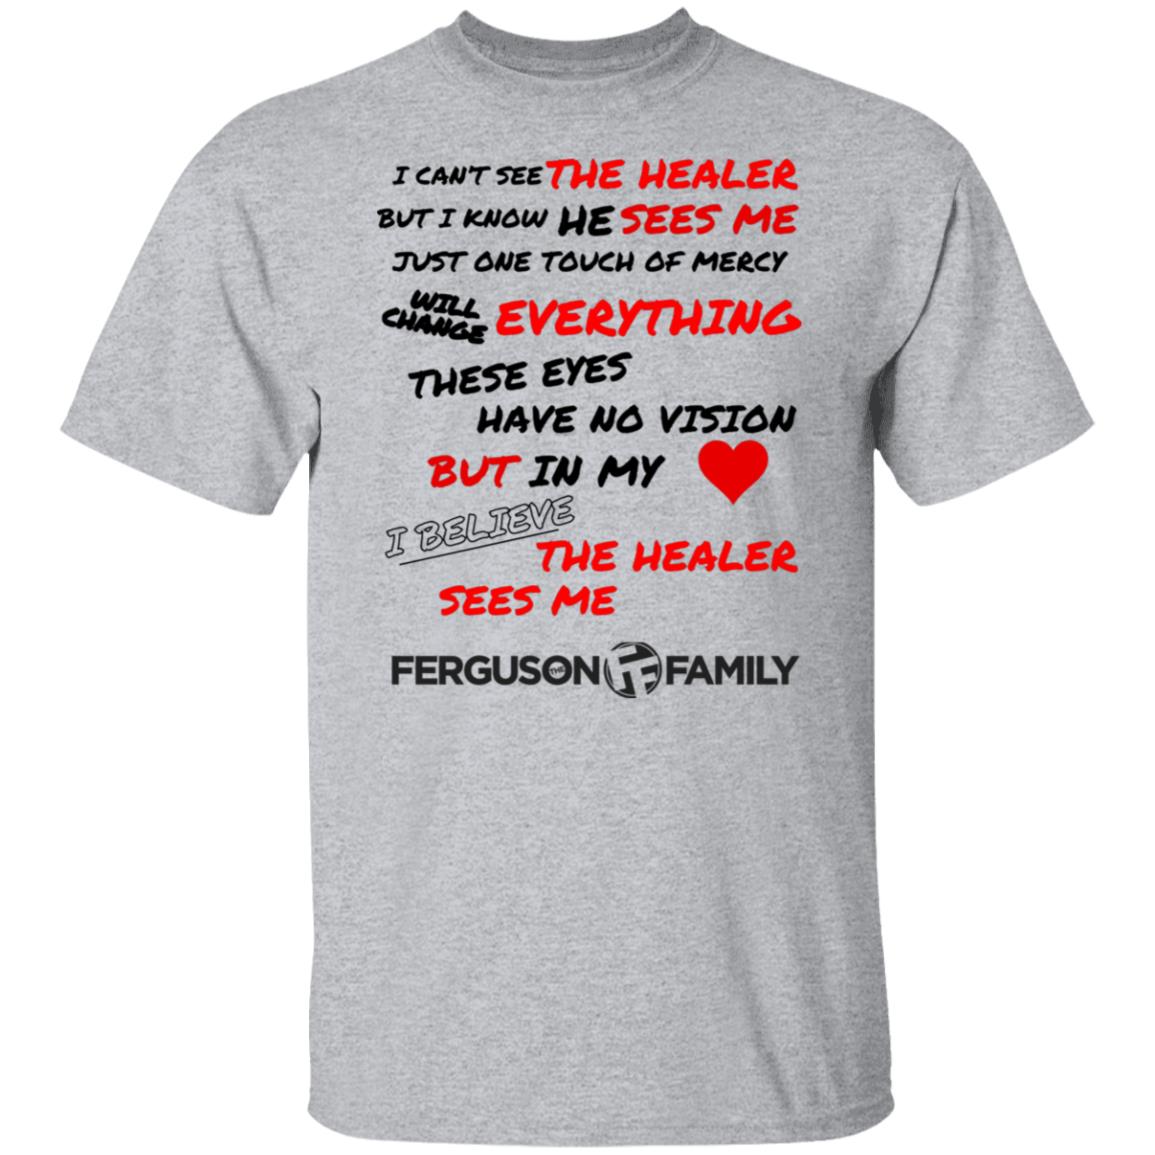 The Ferguson Family - The Healer Sees Me T-Shirt